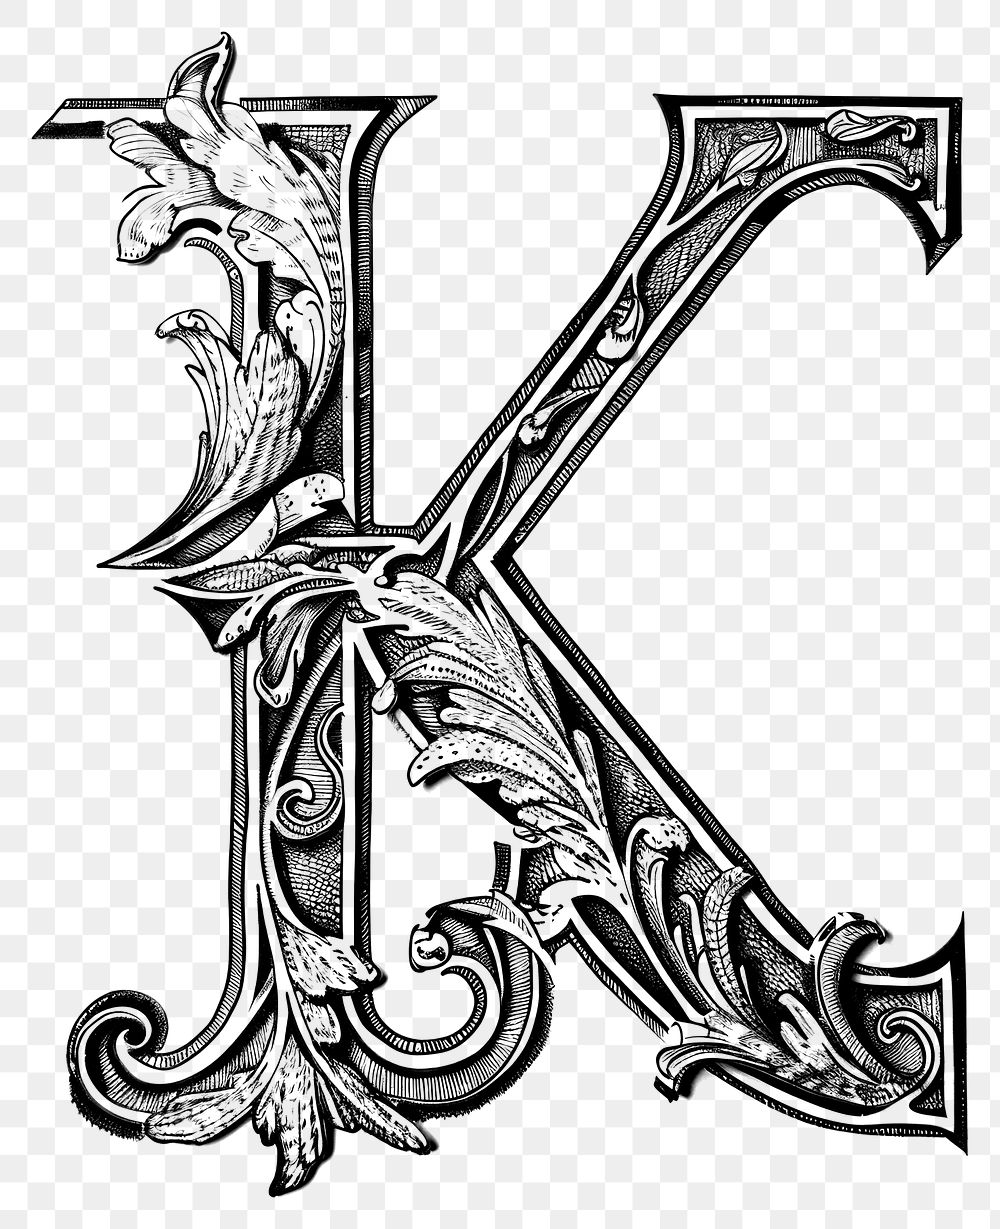 PNG K letter alphabet symbol number cross.